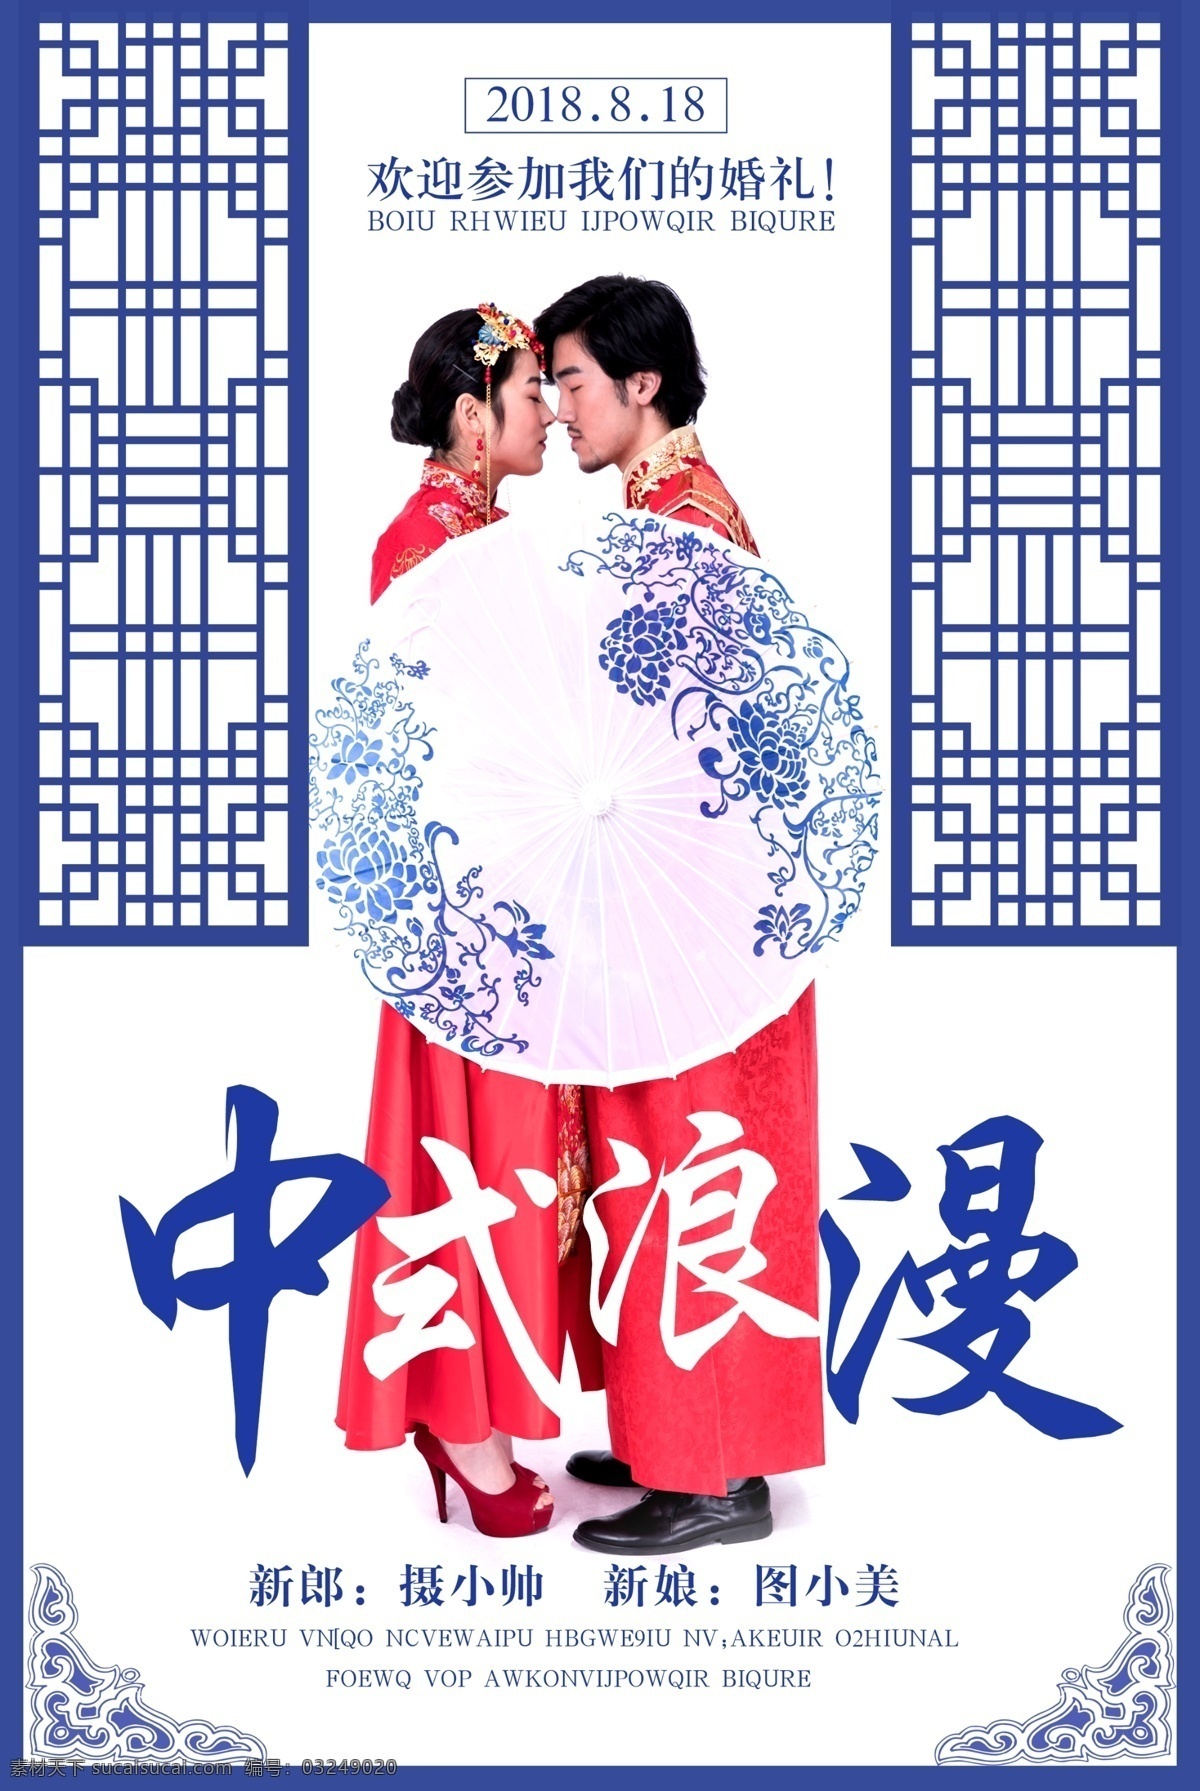 中式婚纱海报 结婚 婚礼 婚庆 新娘 新郎 夫妻 中国风 中式 红色 中式婚礼海报